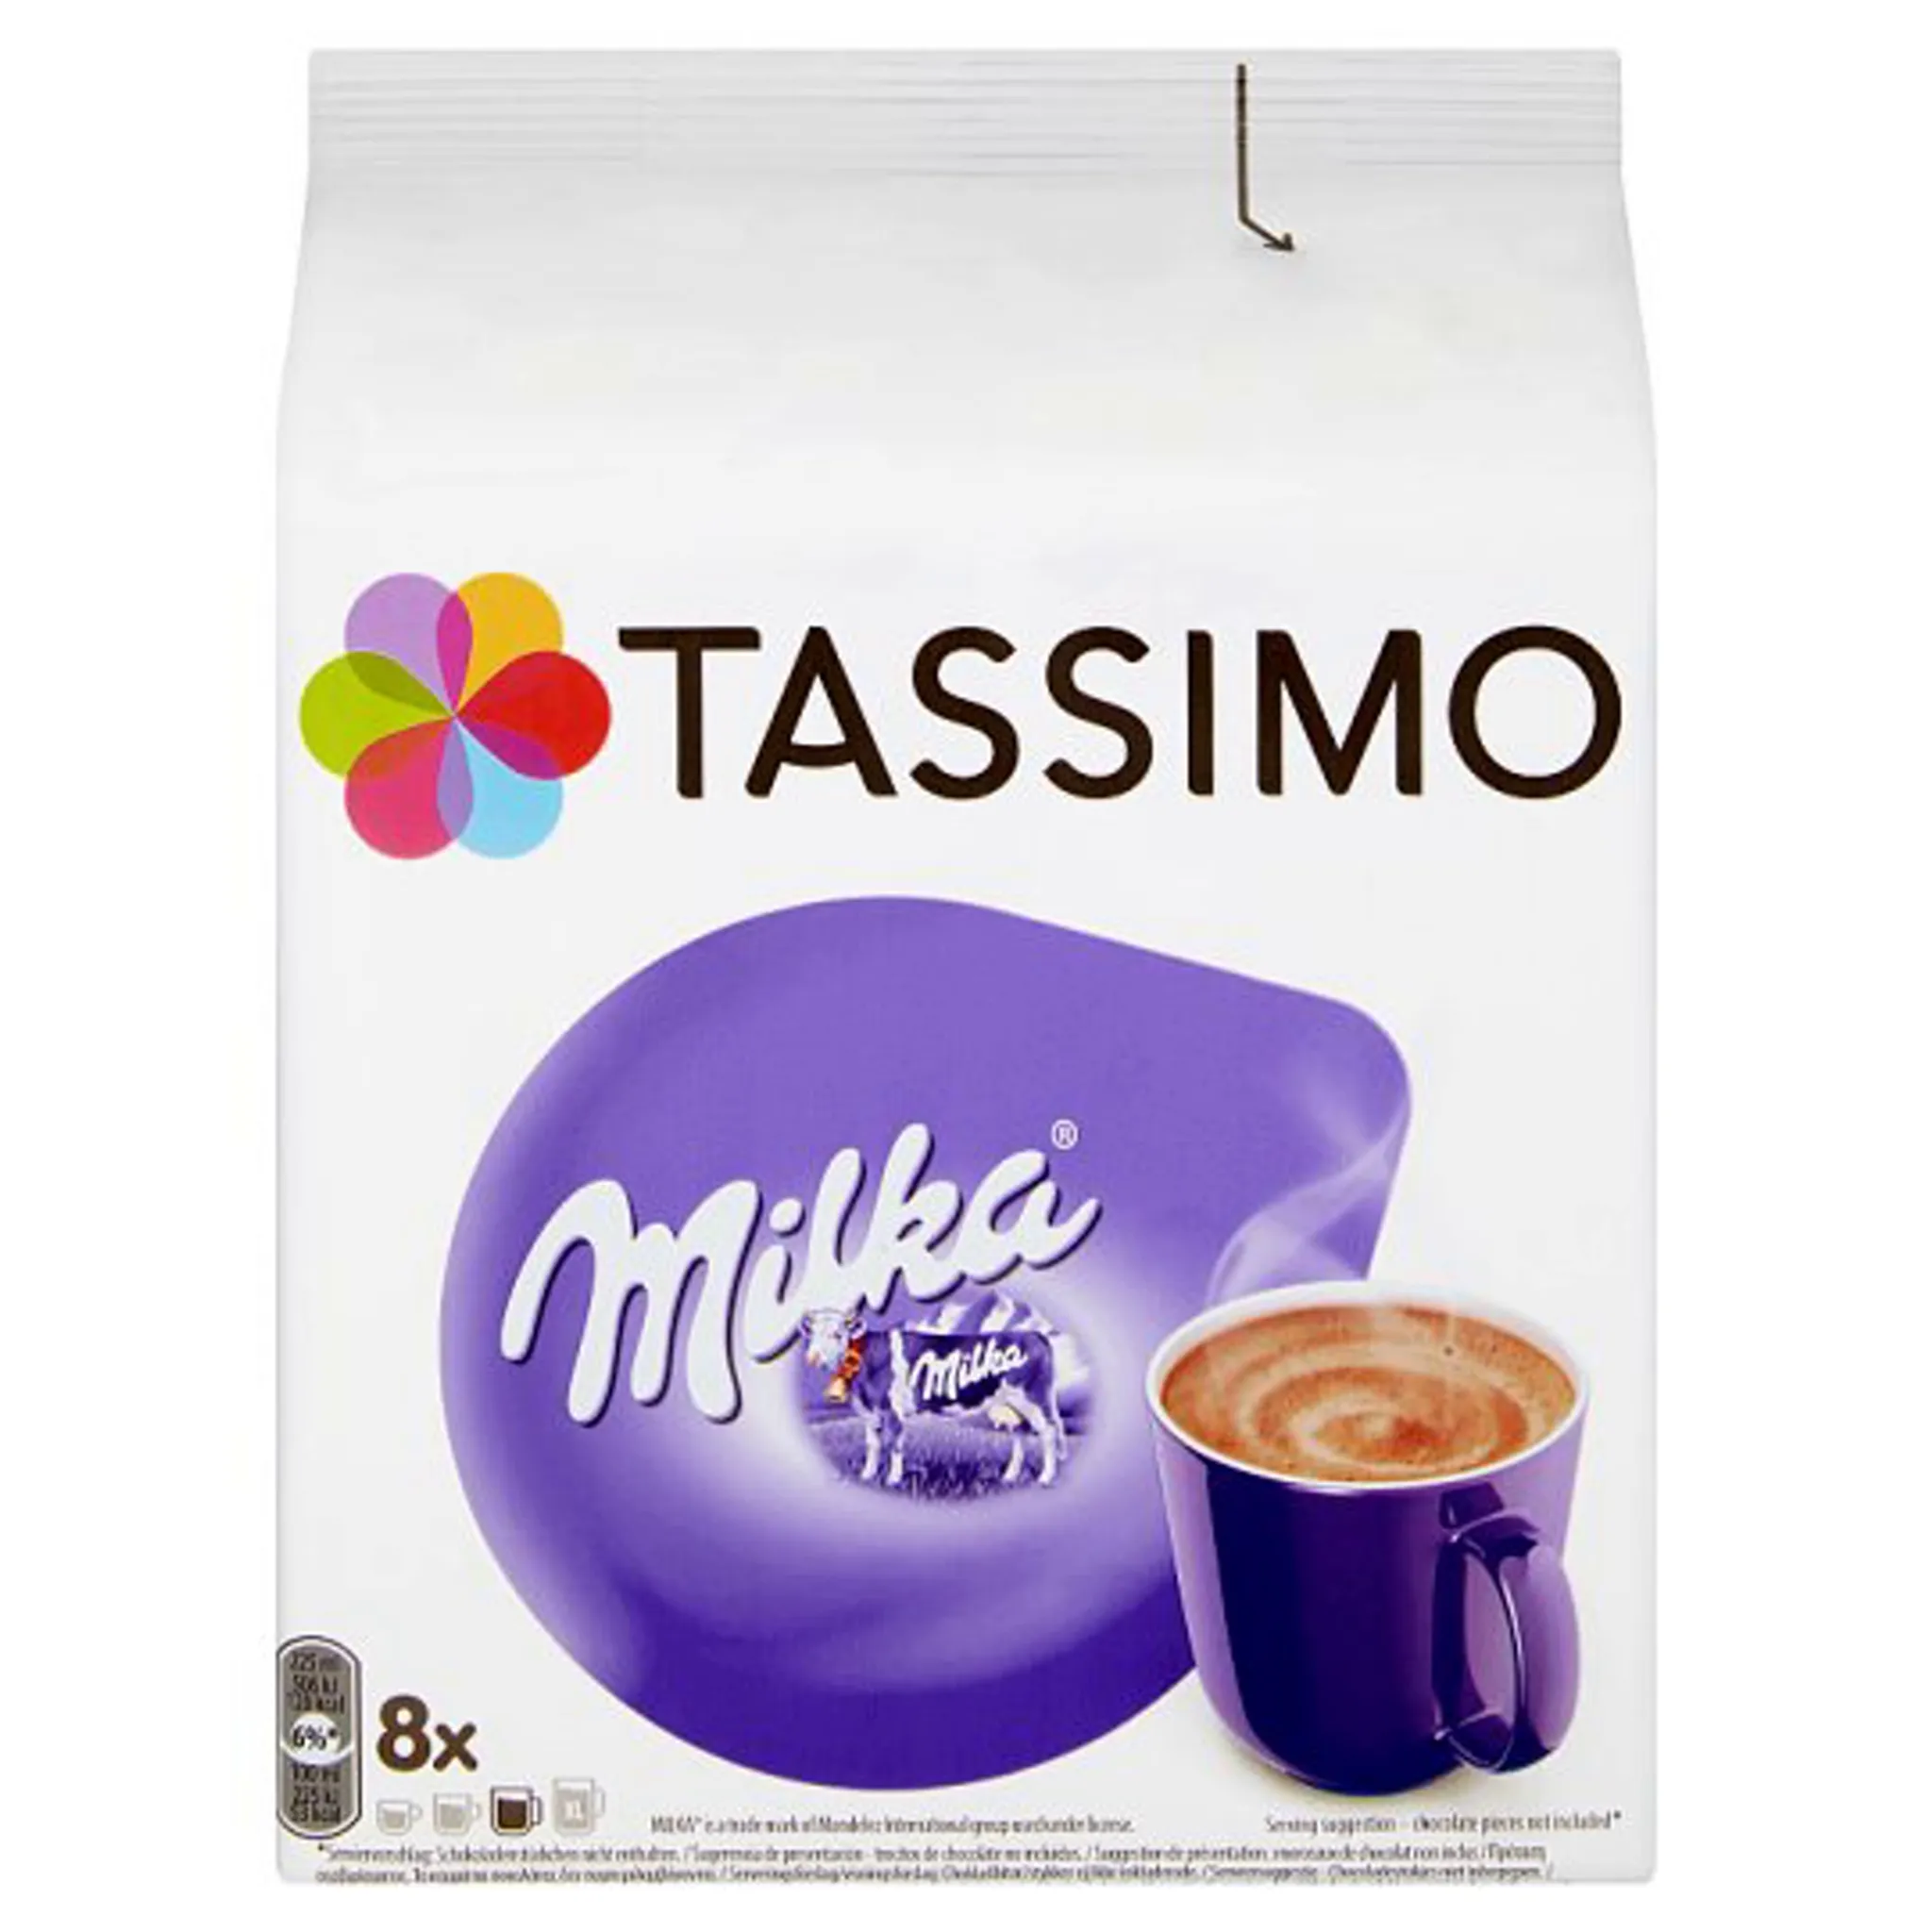 TASSIMO Milka Kakaodiscs 8 Portionen